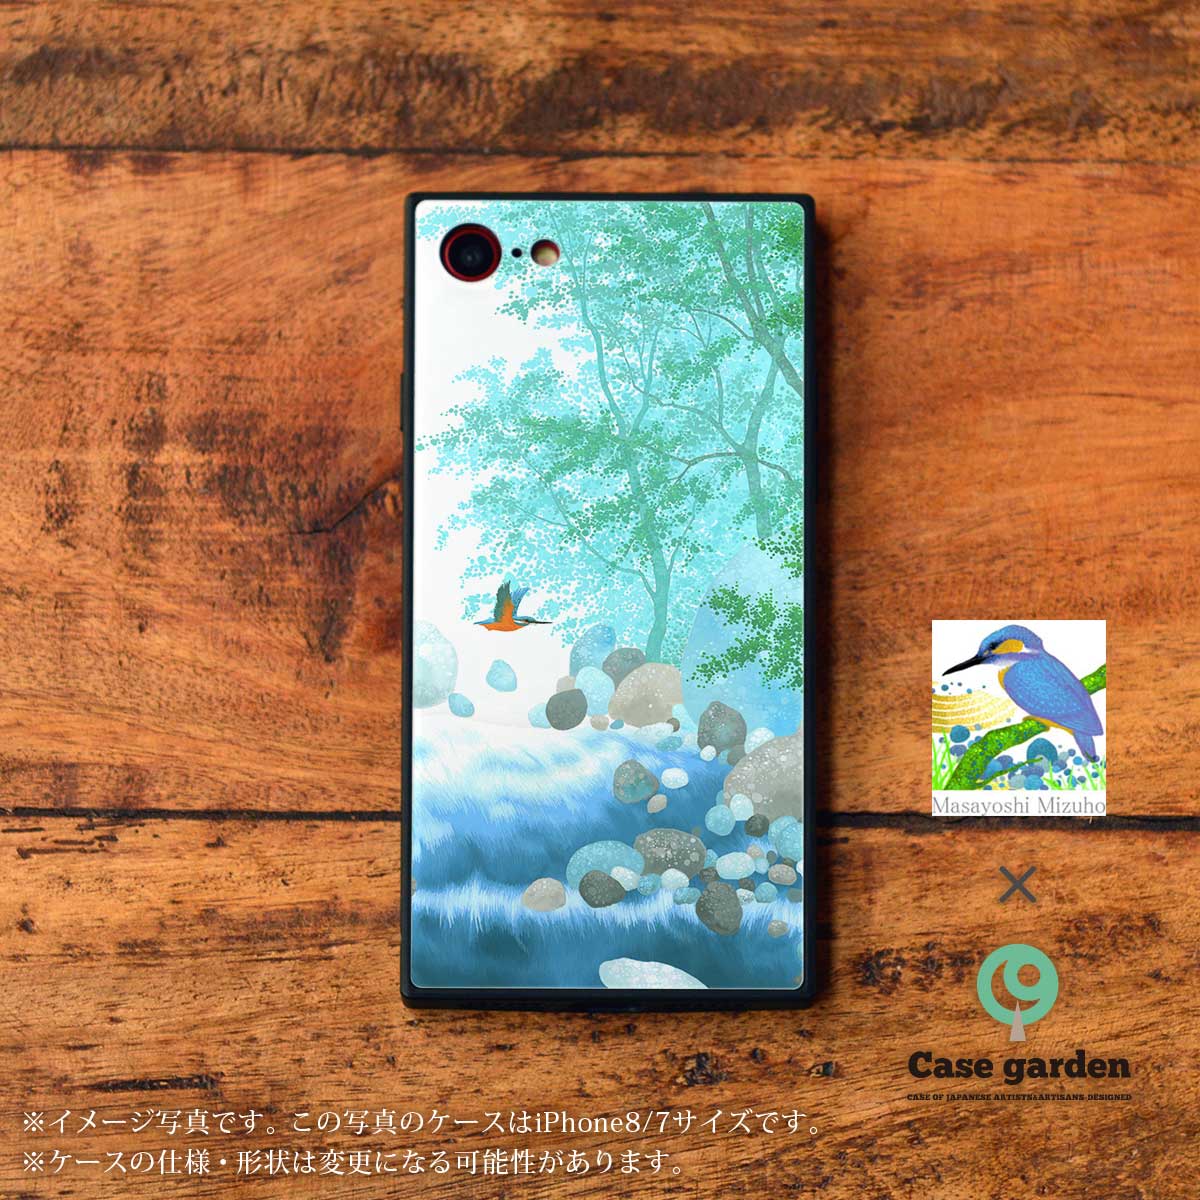 Masayoshi Mizuhoデザインの、キラキラと輝く背面カバーのガラスが美しいスクエア型強化ガラススマホケース「川霧」です。写真の機種はiPhoneXRです。